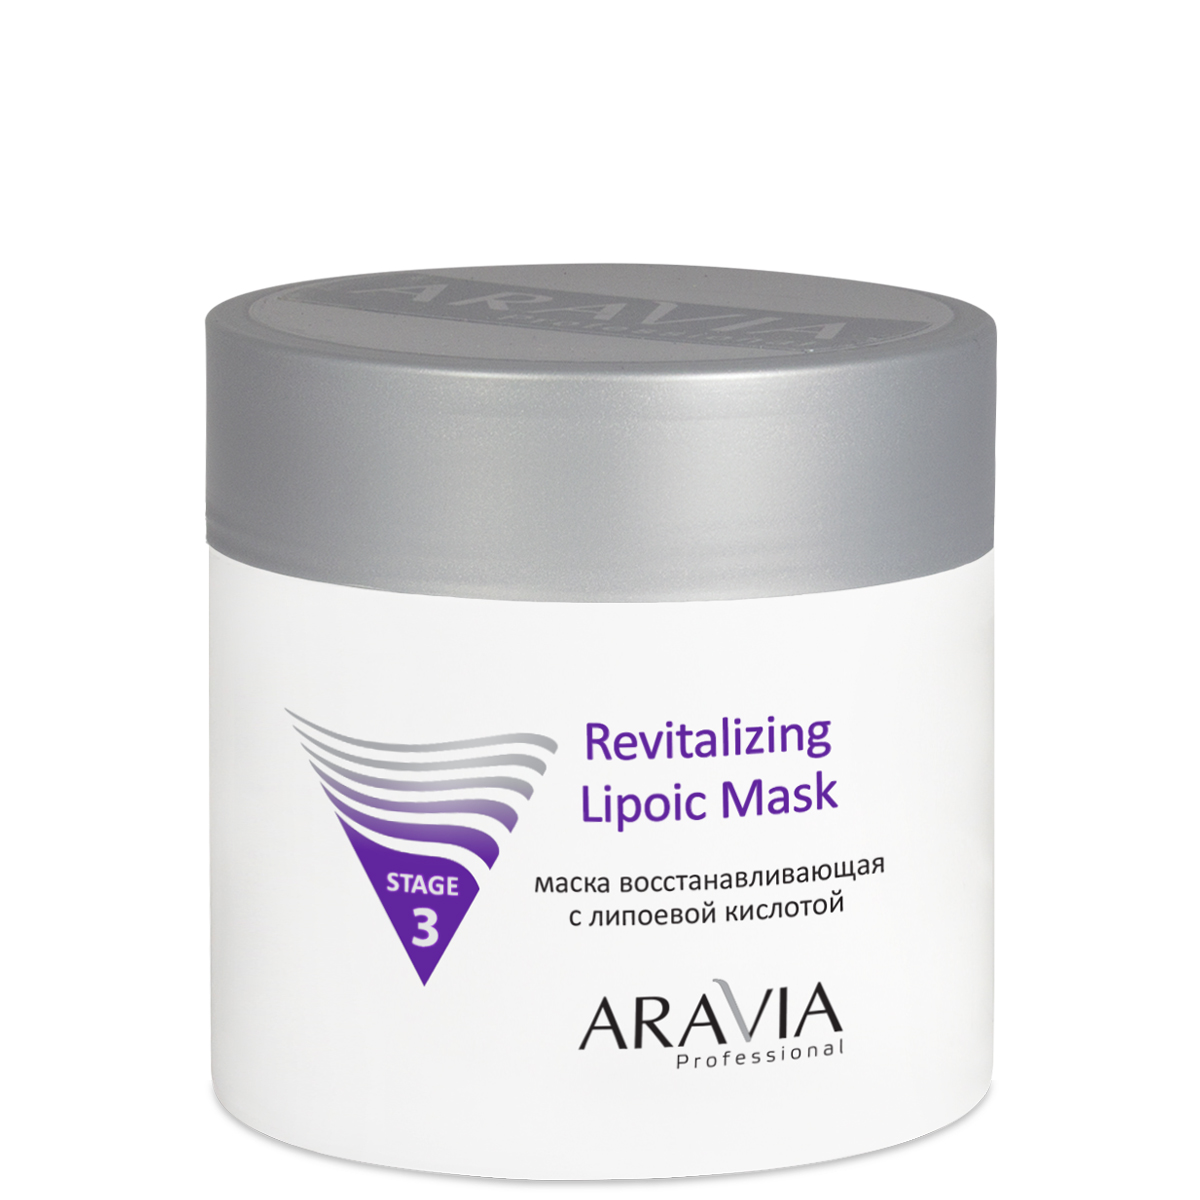 Маска восстанавливающая ARAVIA Professional Revitalizing Lipoic Mask липоевой кислотой,300мл. 6003 